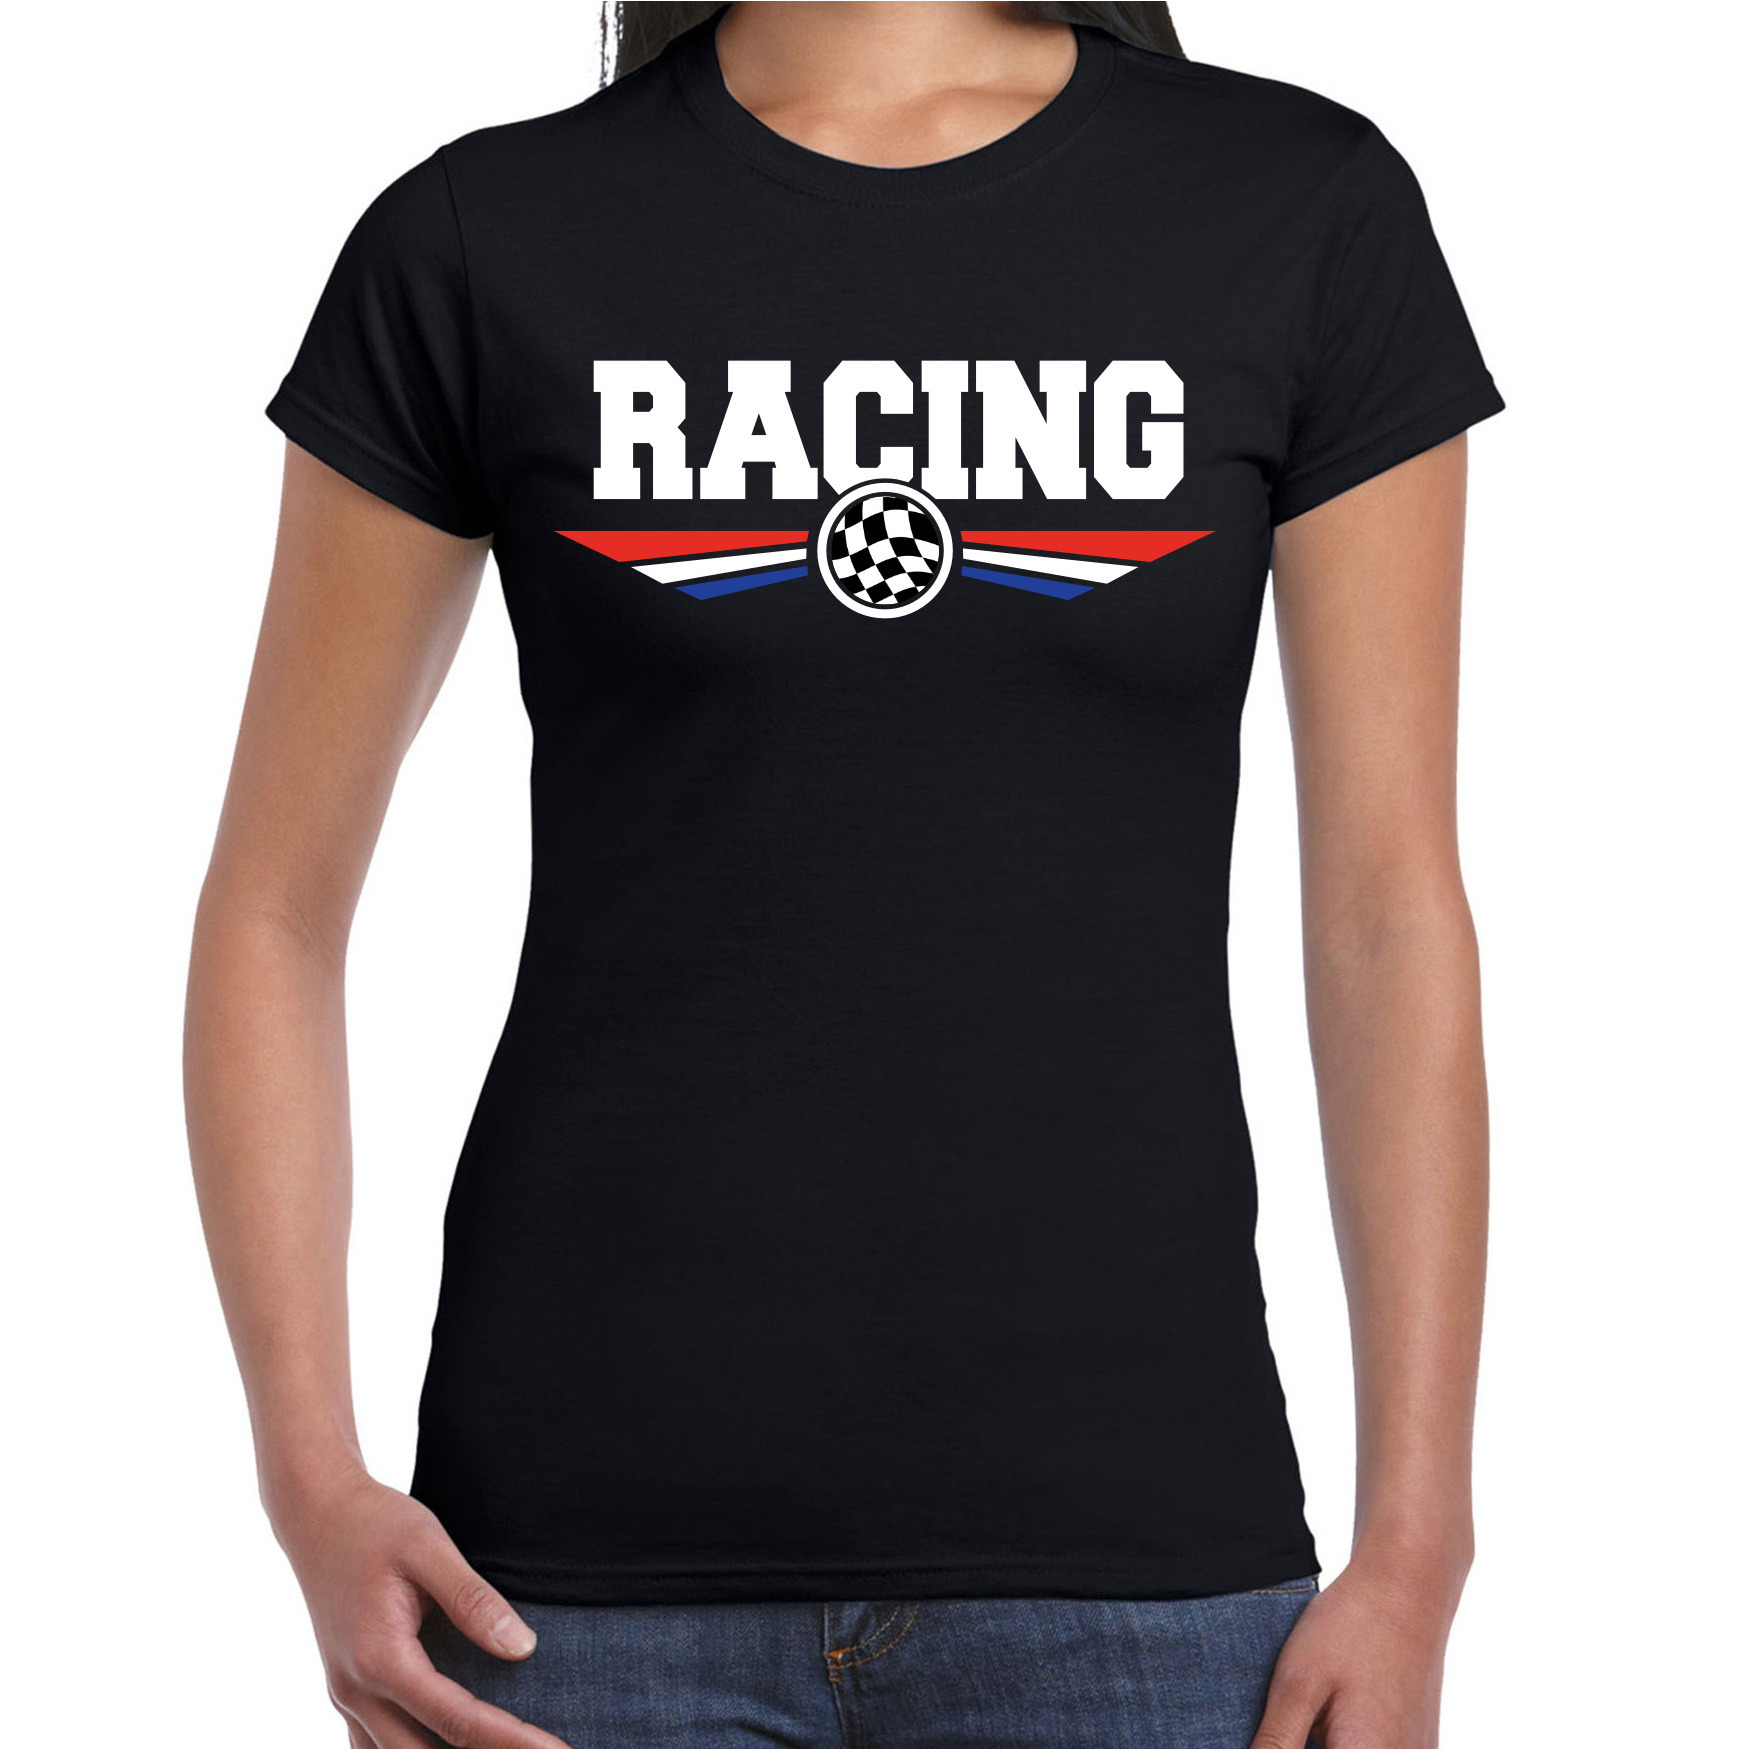 Racing coureur supporter t shirt met Nederlandse vlag zwart voor dames race thema race supporter